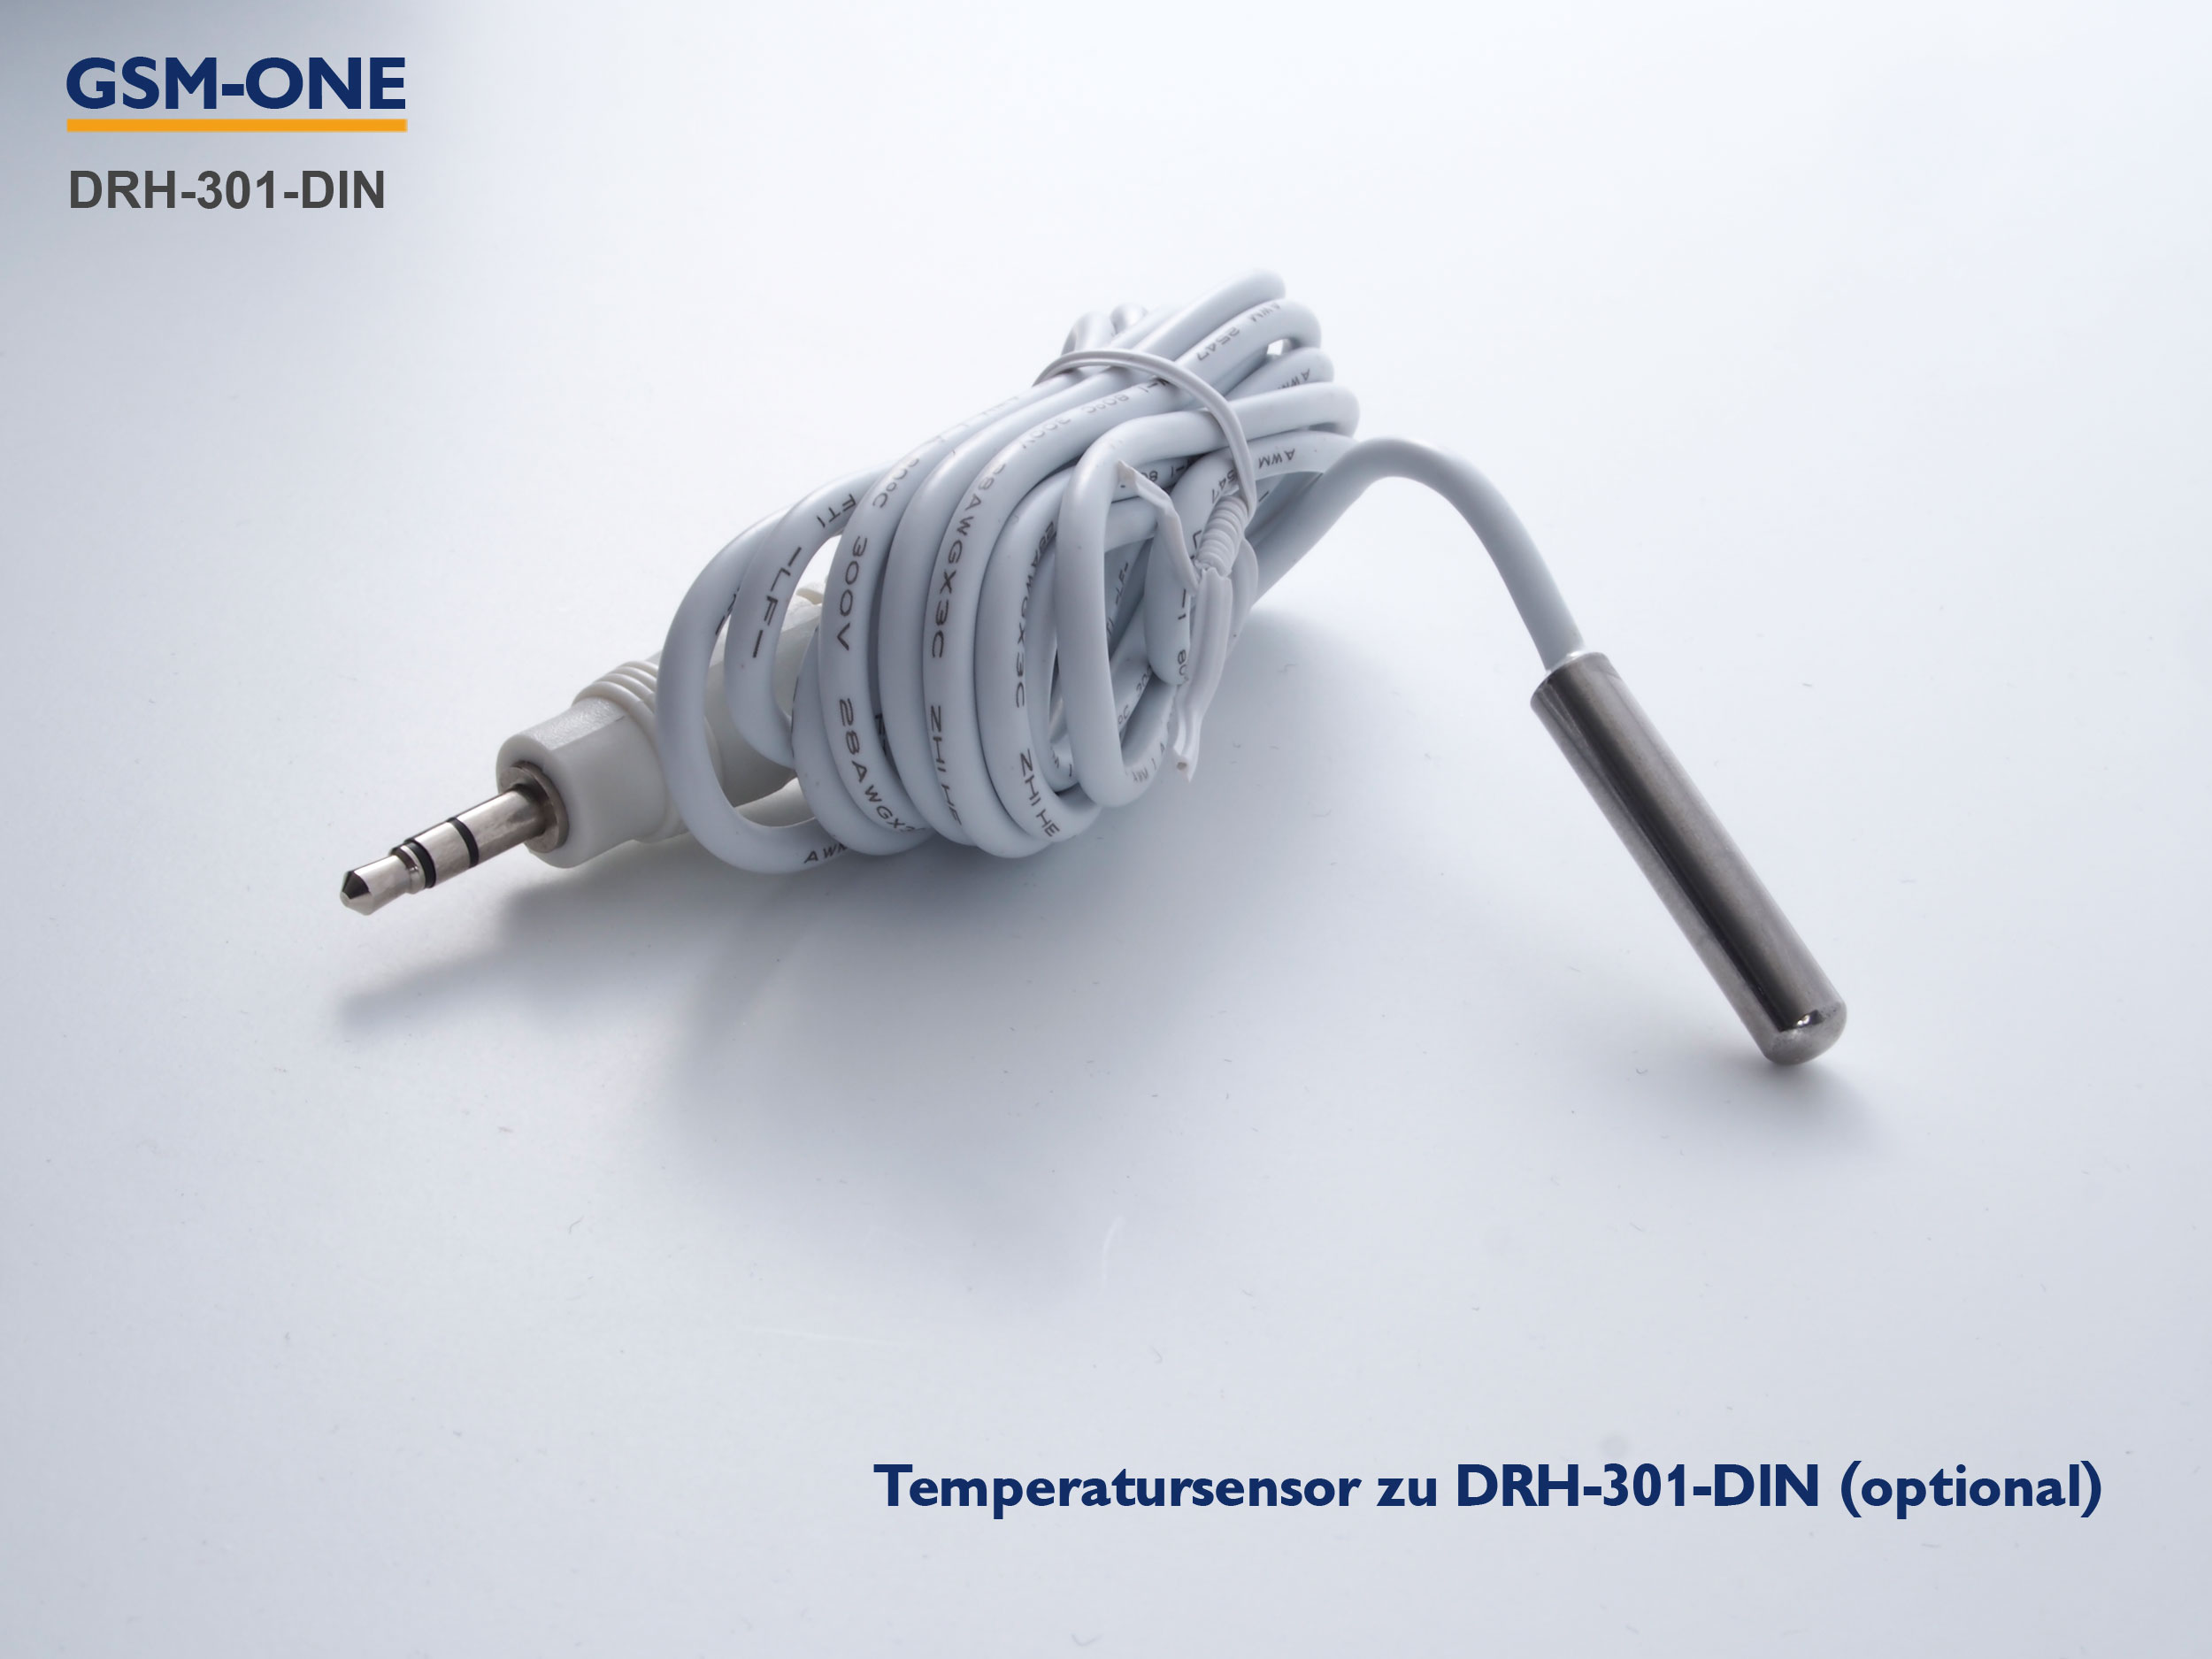 Temperatursensor für DRH-301-DIN und DRH-3015